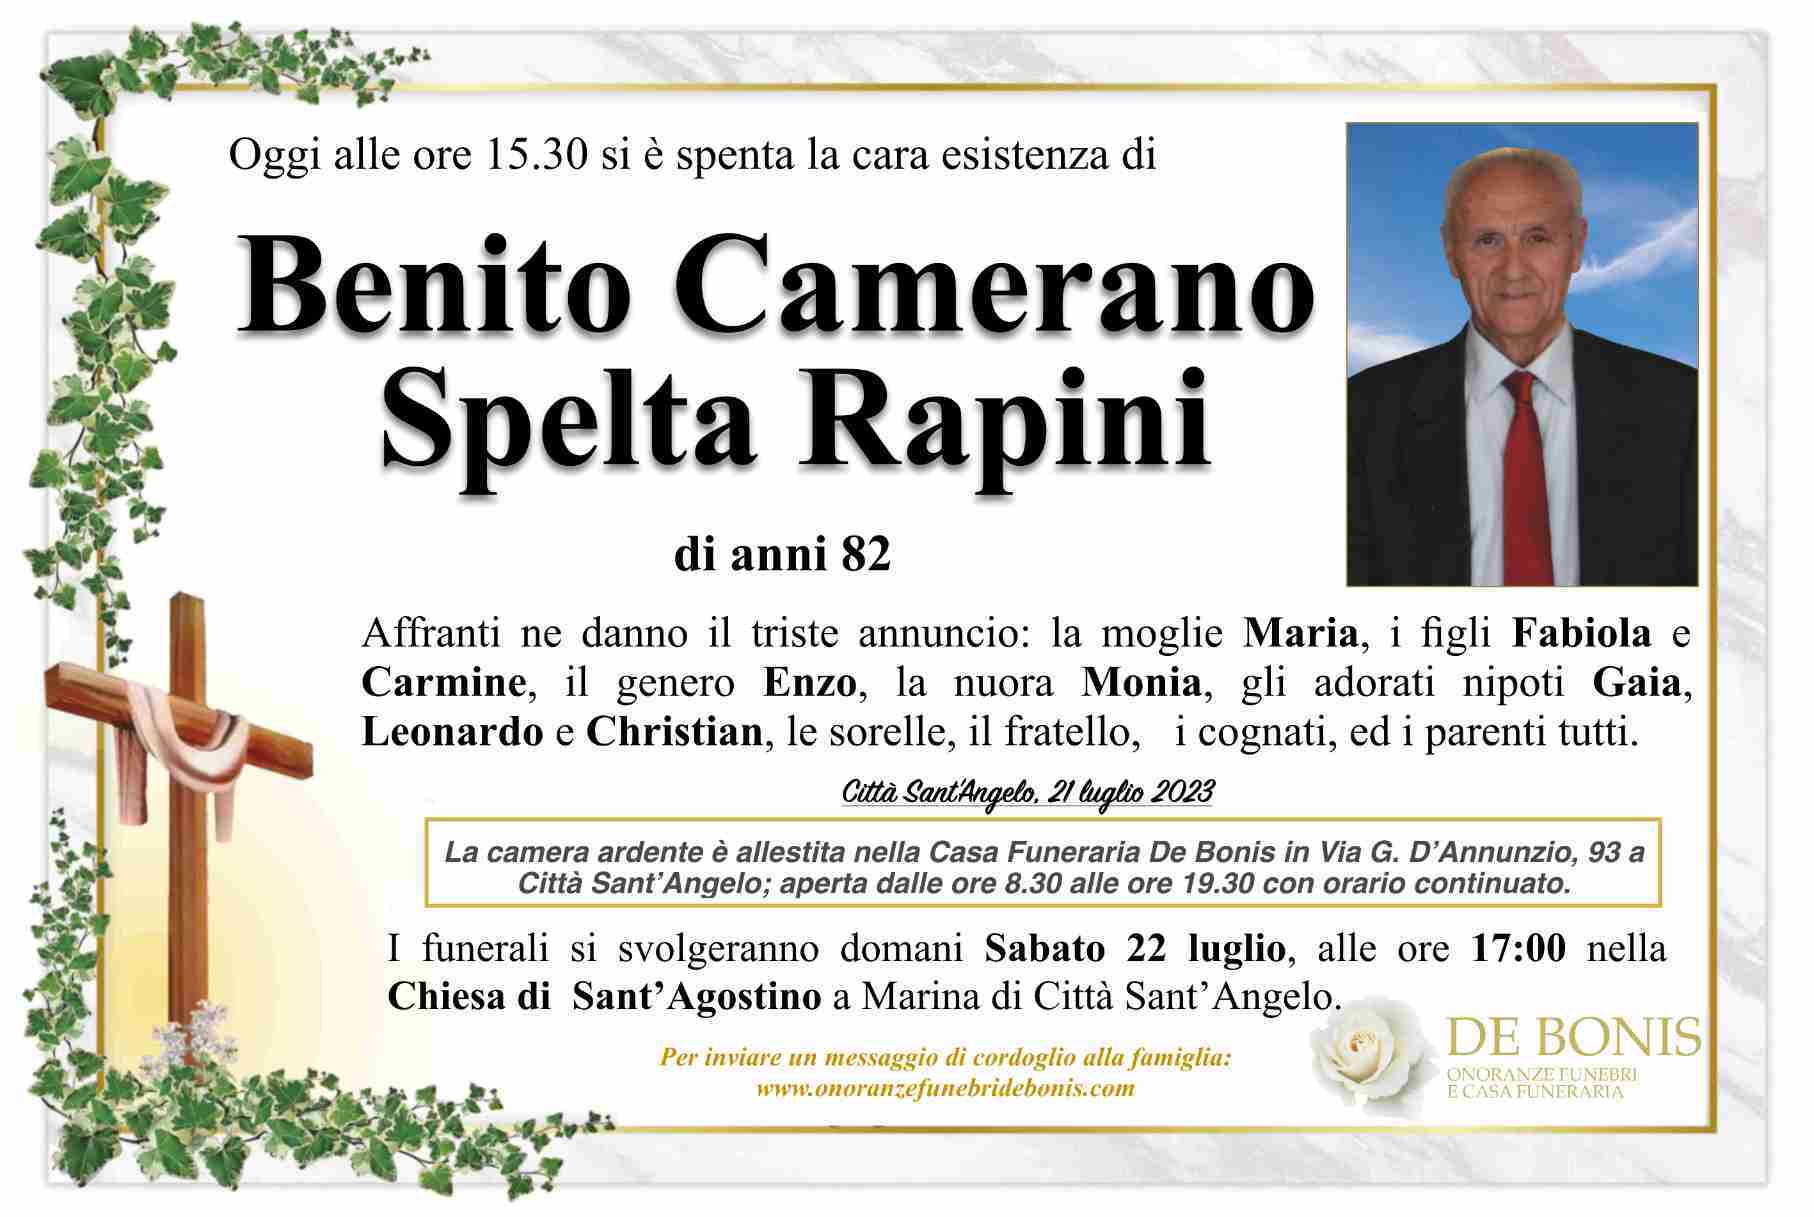 Benito Camerano Spelta Rapini